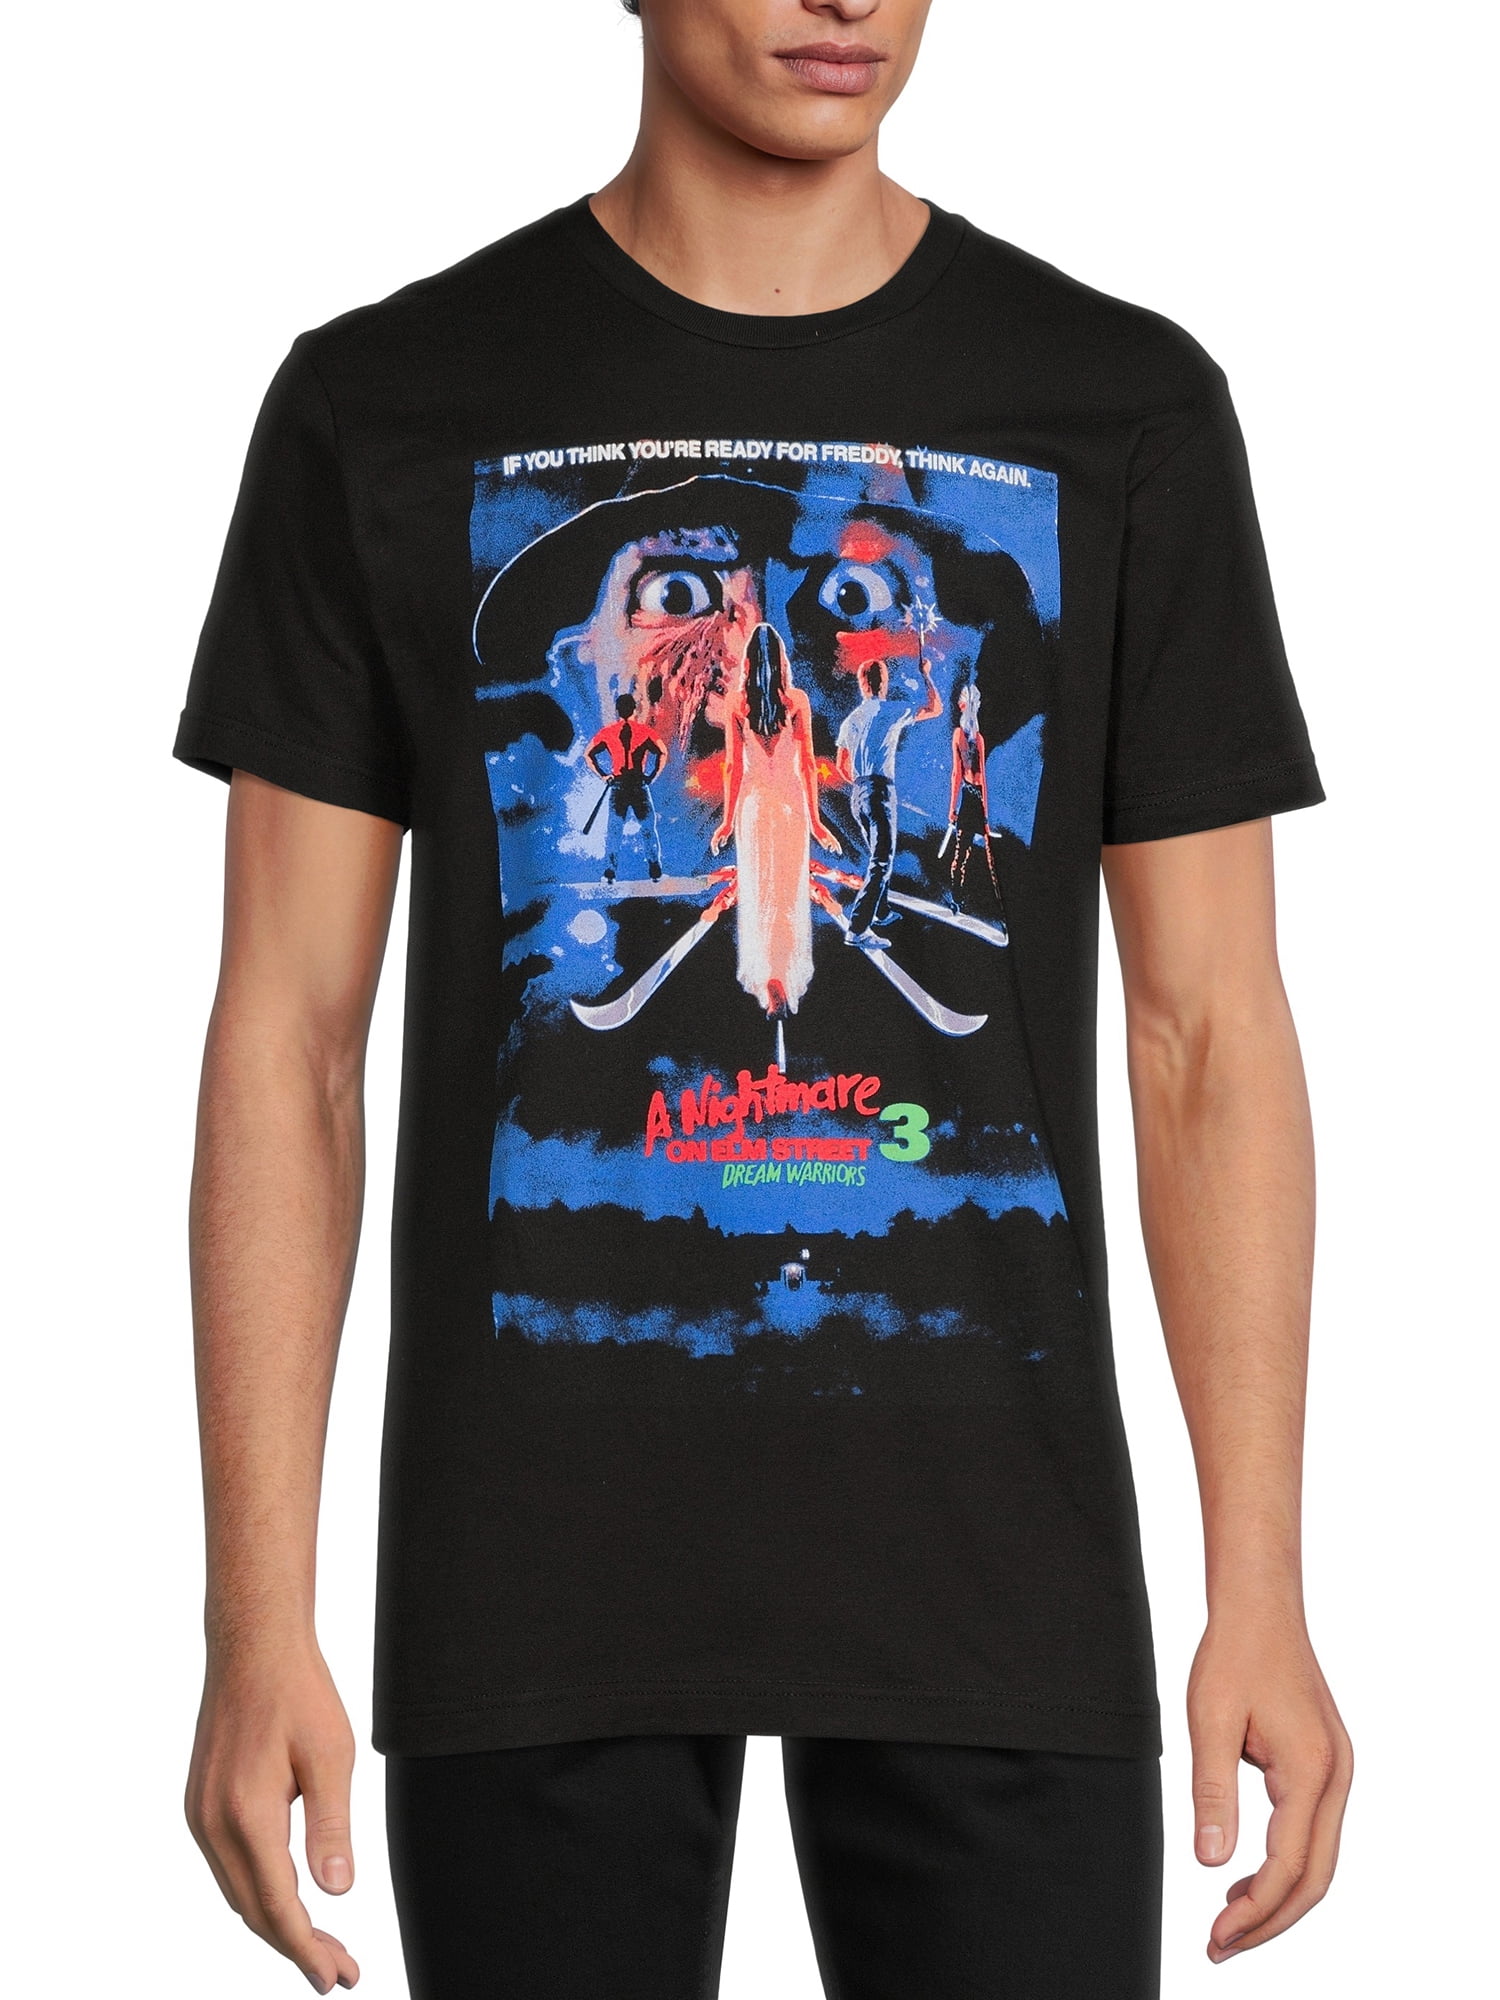 DYONG Short Sleeve Crew Neck T-Shirt for Teenagers Art Modern Hip Hop Tees 